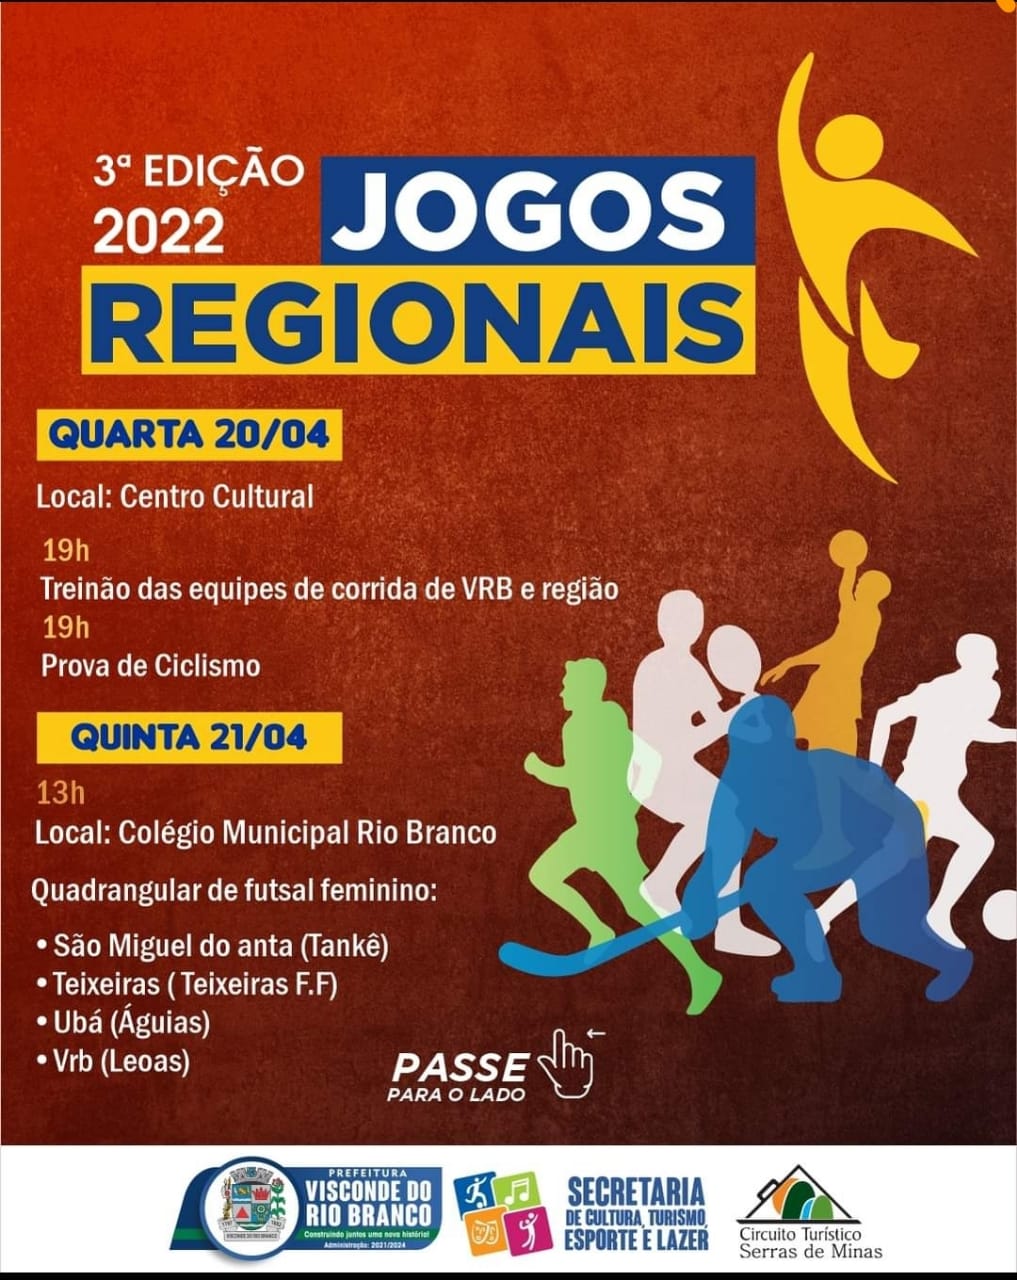 “3ª Edição 2022 dos Jogos Regionais”